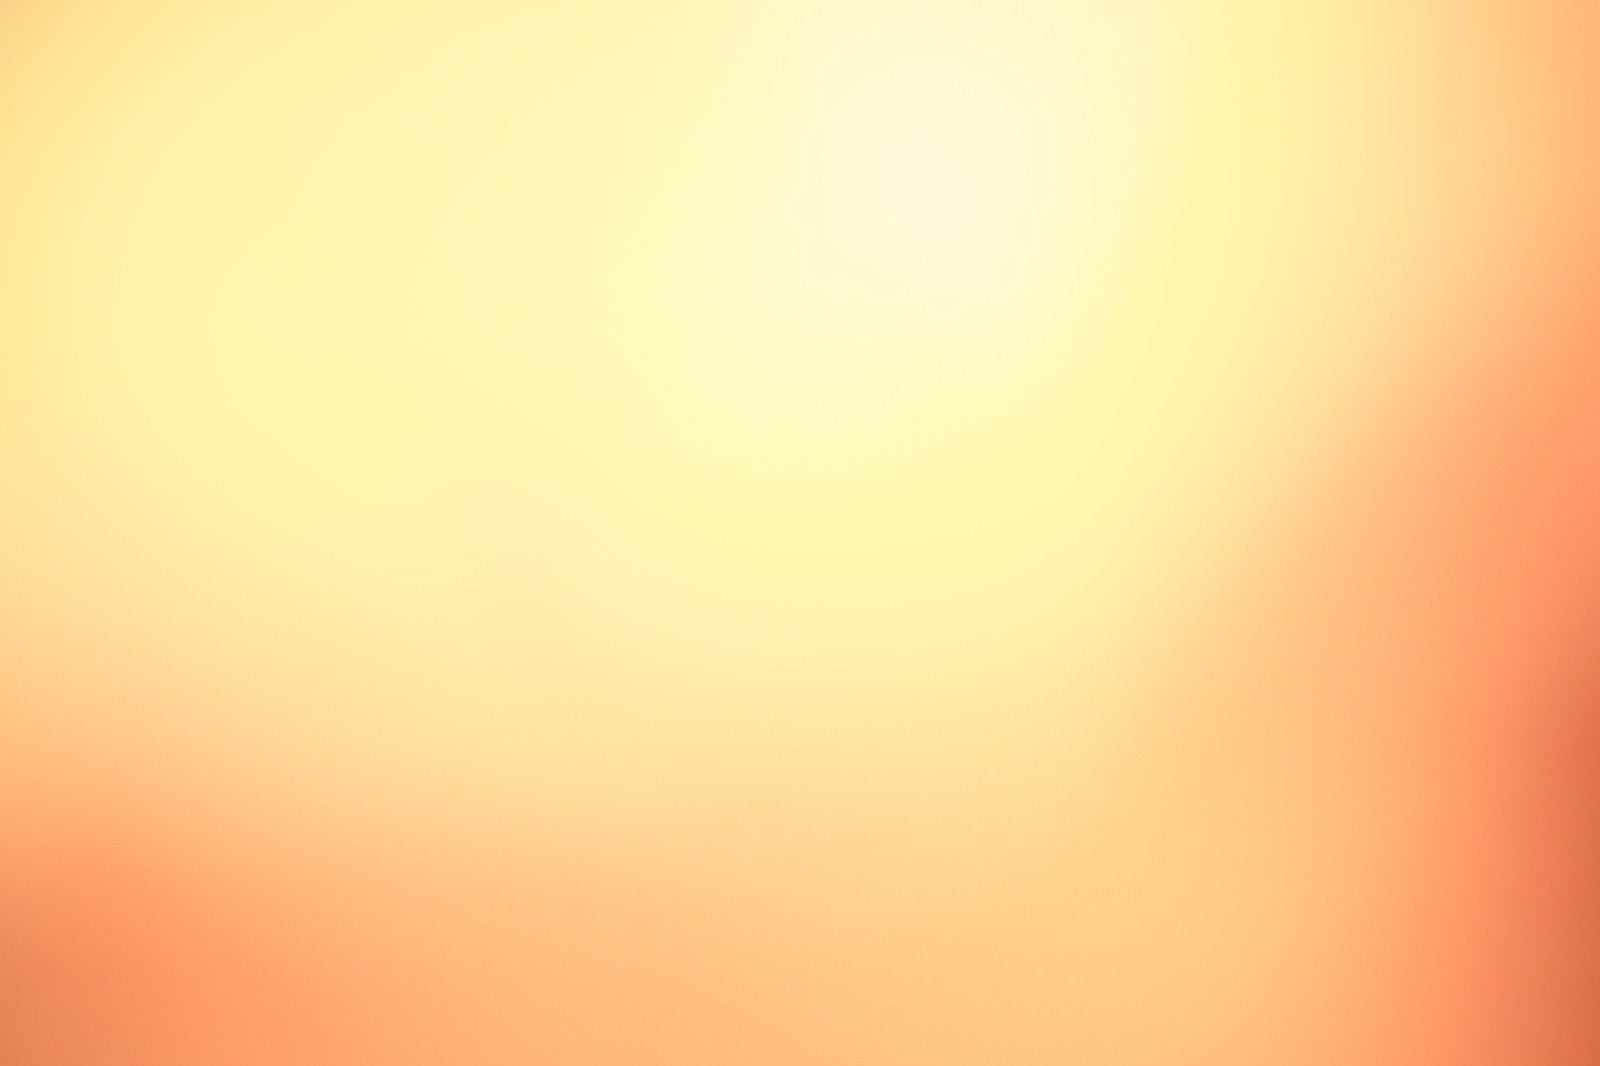 「オレンジ色の光」の写真